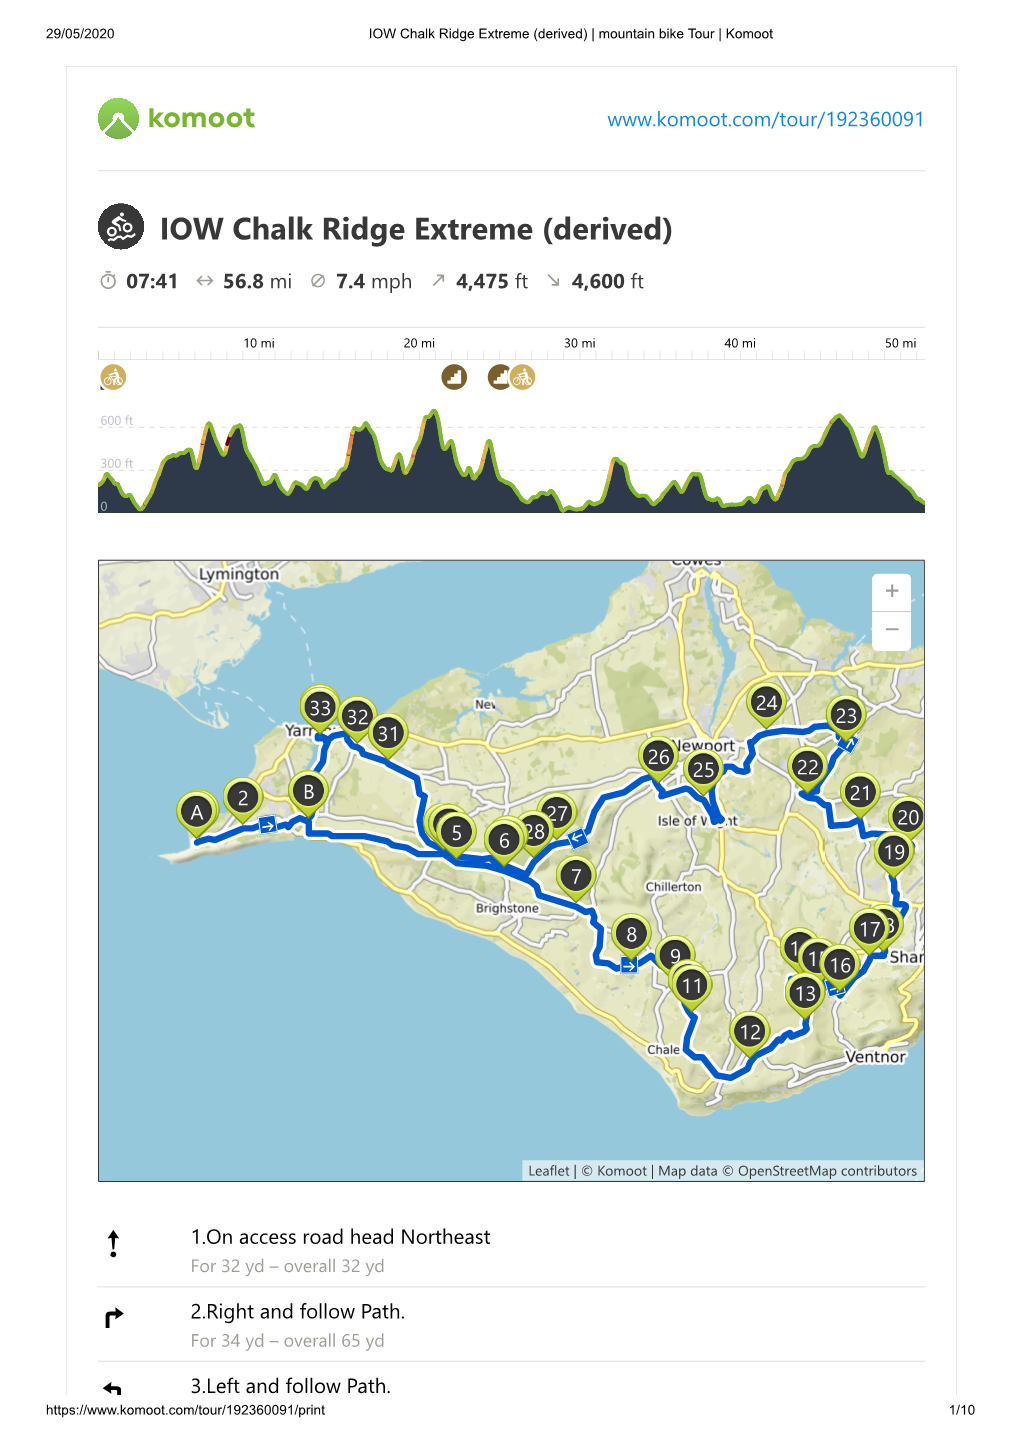 IOW Chalk Ridge Extreme (Derived) | Mountain Bike Tour | Komoot